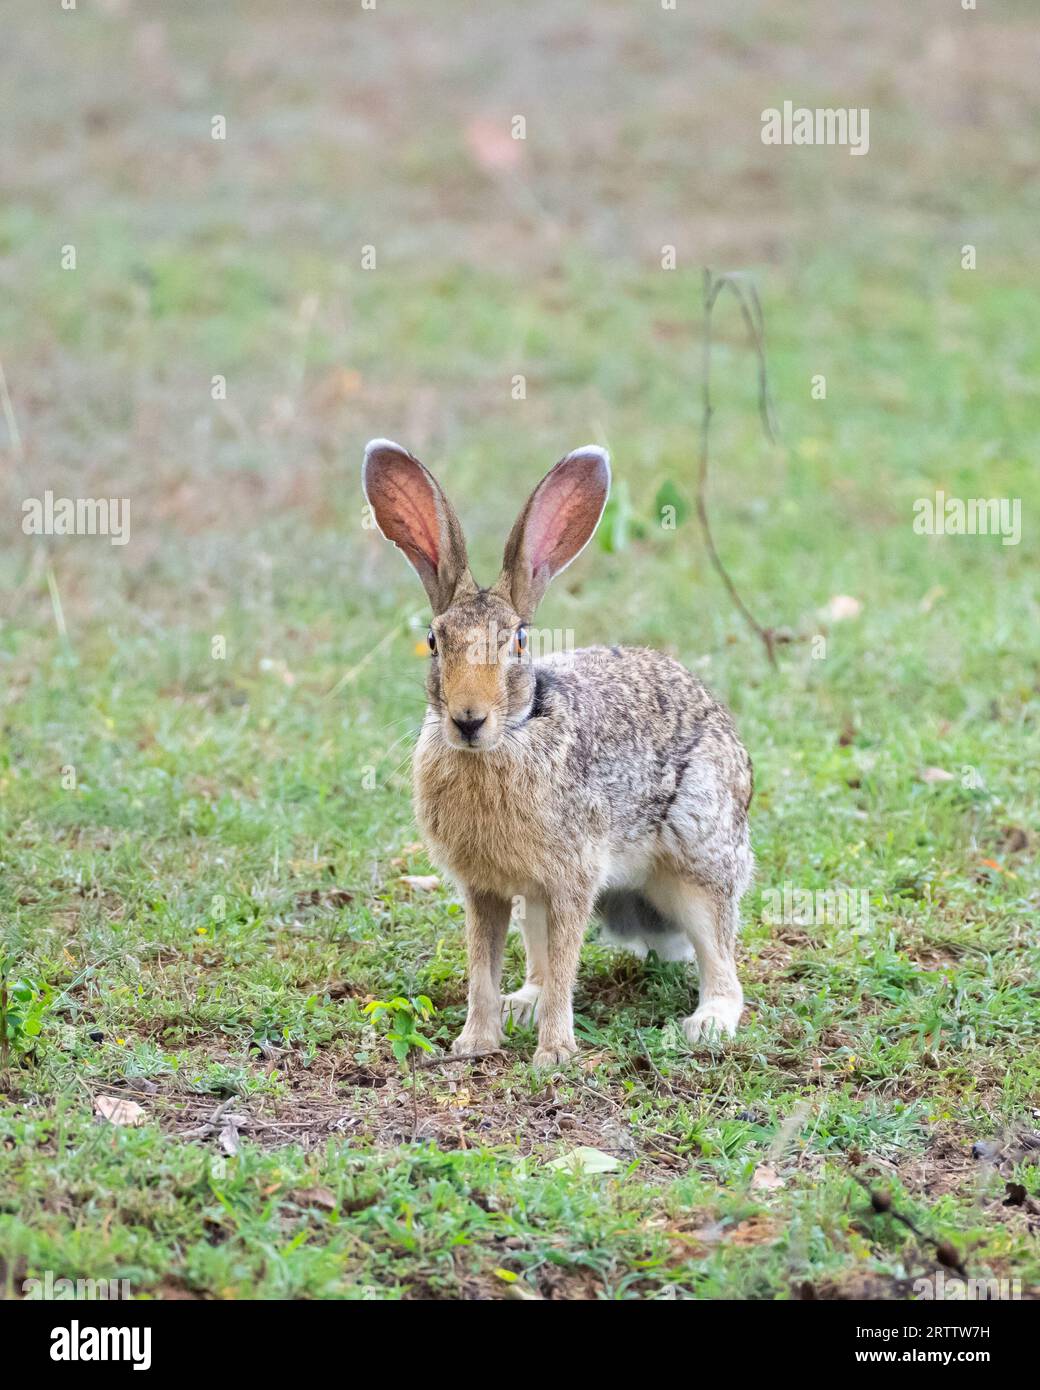 Fotografia ravvicinata del profilo della lepre indiana, lepre attenta sul campo d'erba, lunghe orecchie davanti. Foto Stock